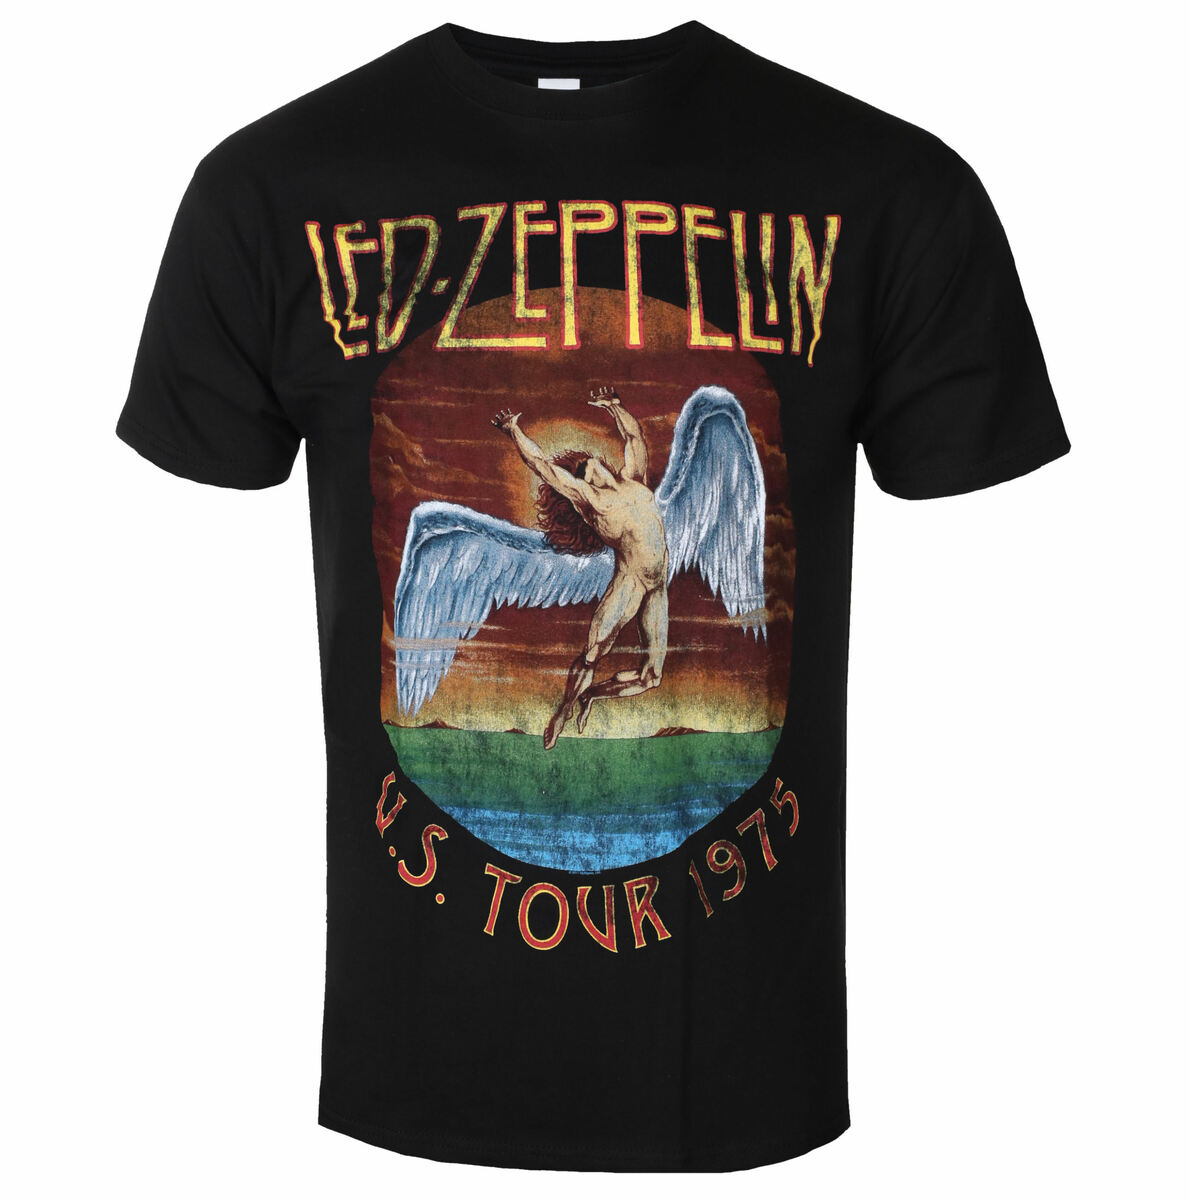 Led Zeppelin - USA Tour 1975